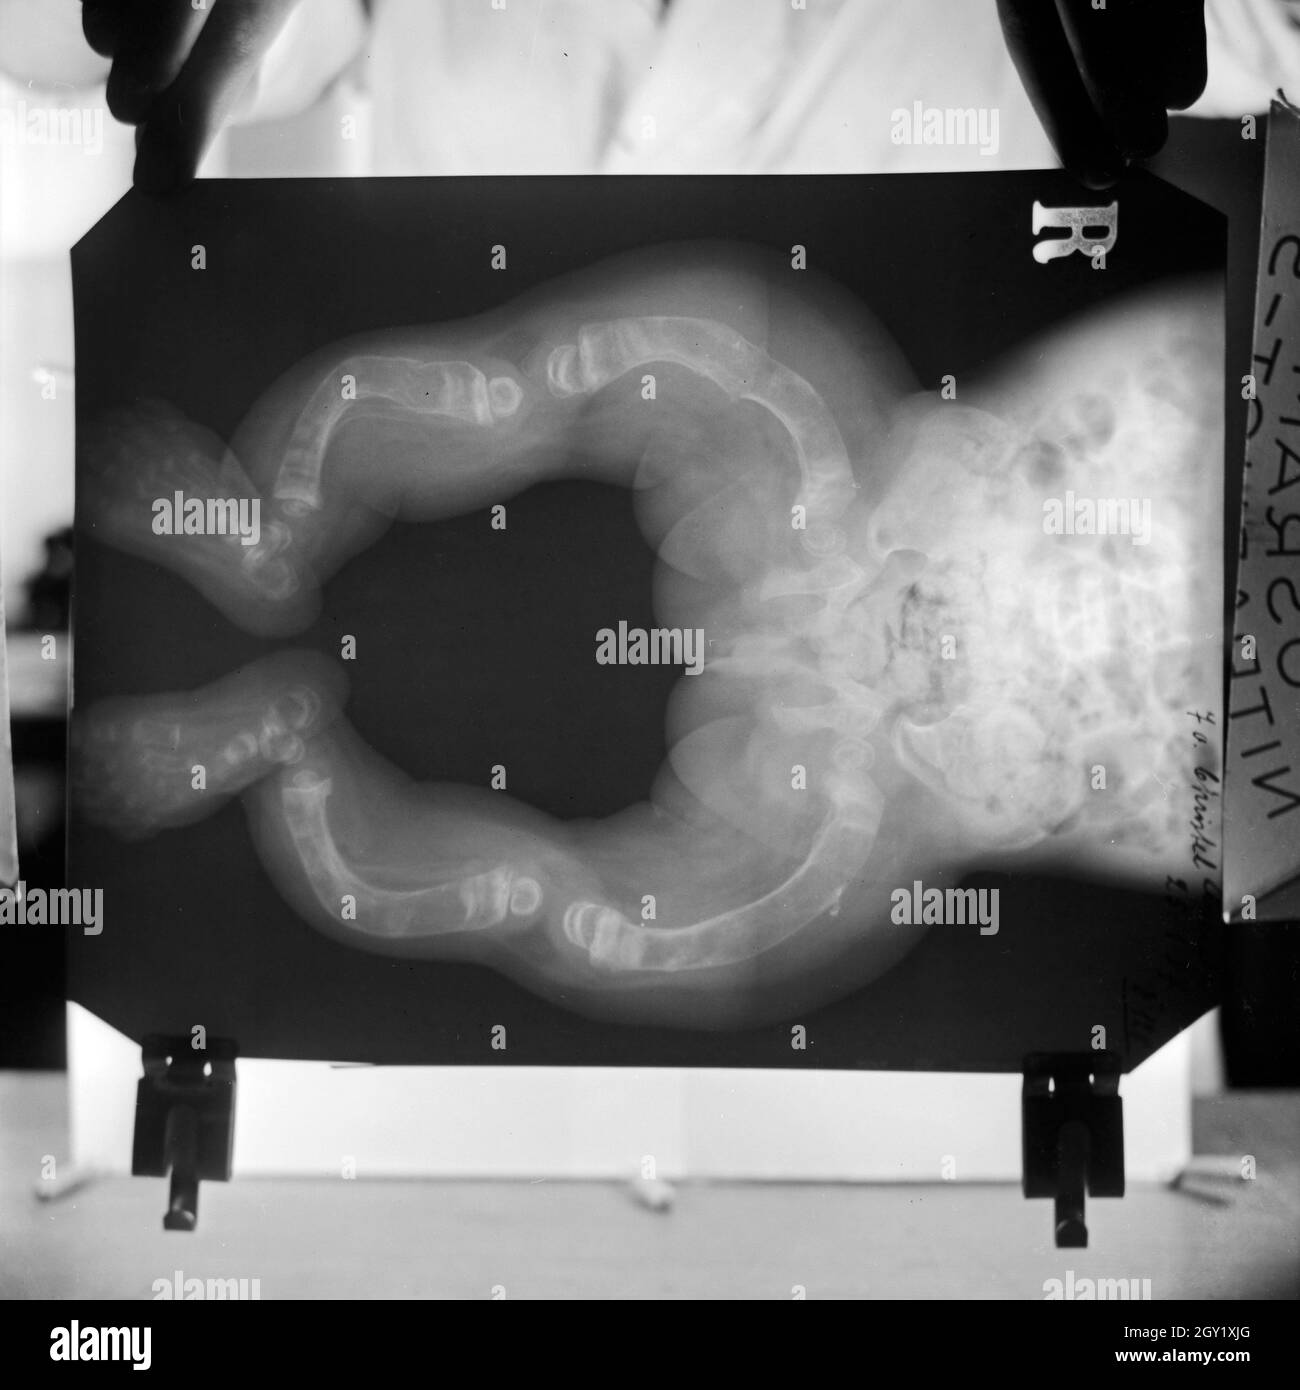 Reproduktion eines Röntgenbilds der deformierten Knochen eines Kleinkinds, Deutschland 1930er Jahre. Reproduktion von einem röntgenbild von verformten Beinknochen eines Kindes, Deutschland 1930. Stockfoto